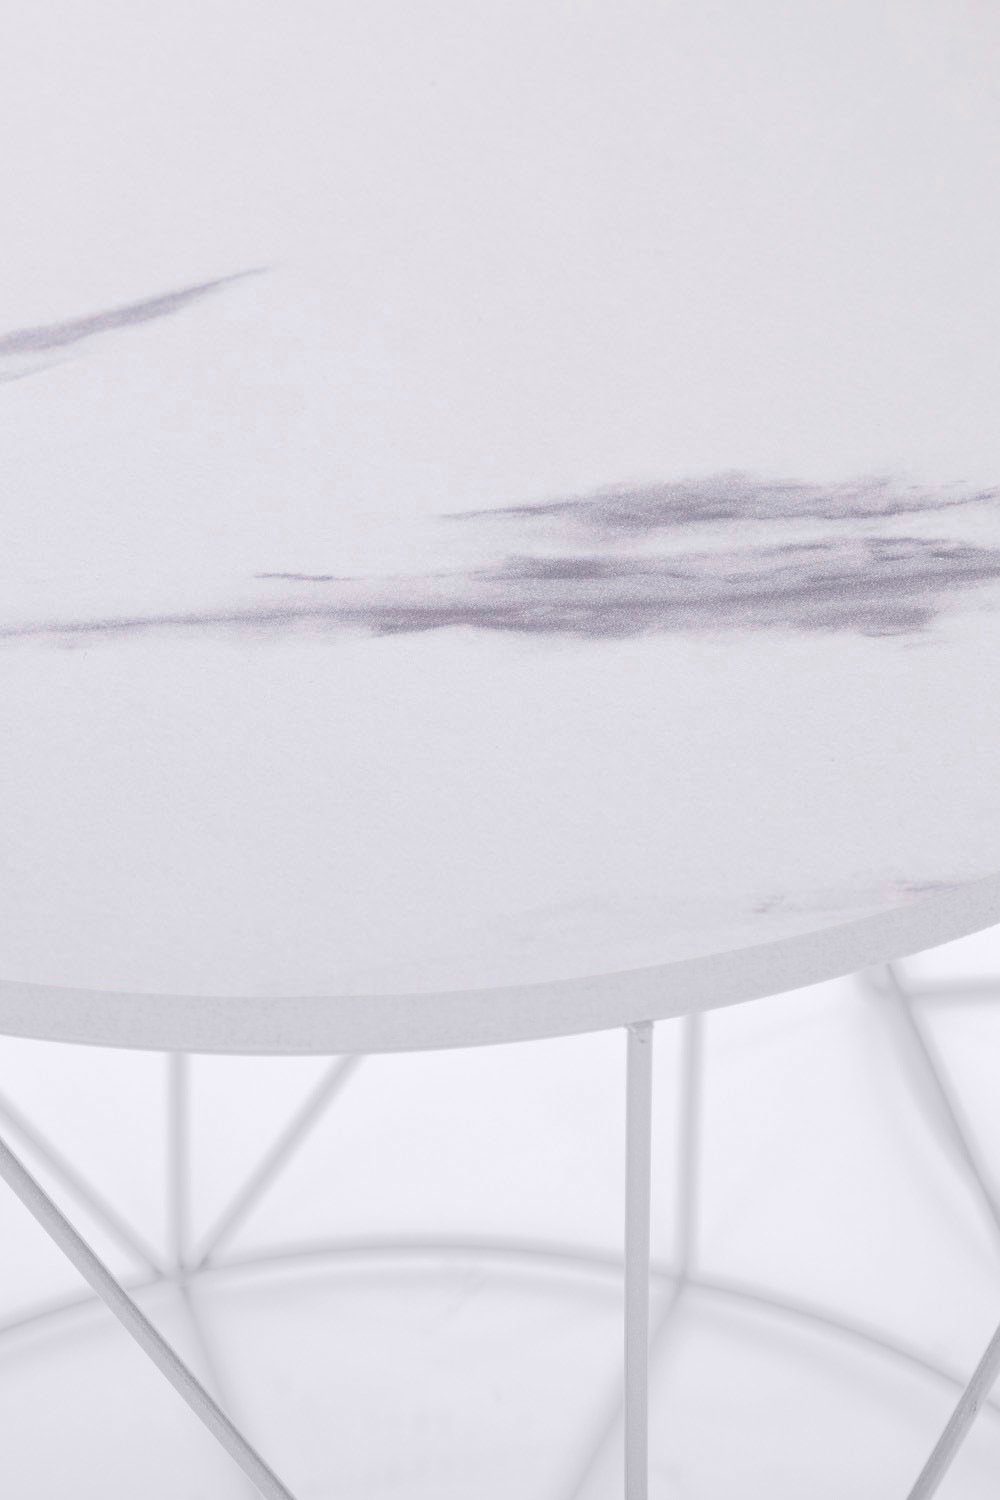 my Flair | Weiß Gestell, Weiß/Marmor Naturbelassene Rundini, Design Weiß Skandinavischem lackiertem Beistelltisch im Design Platte 